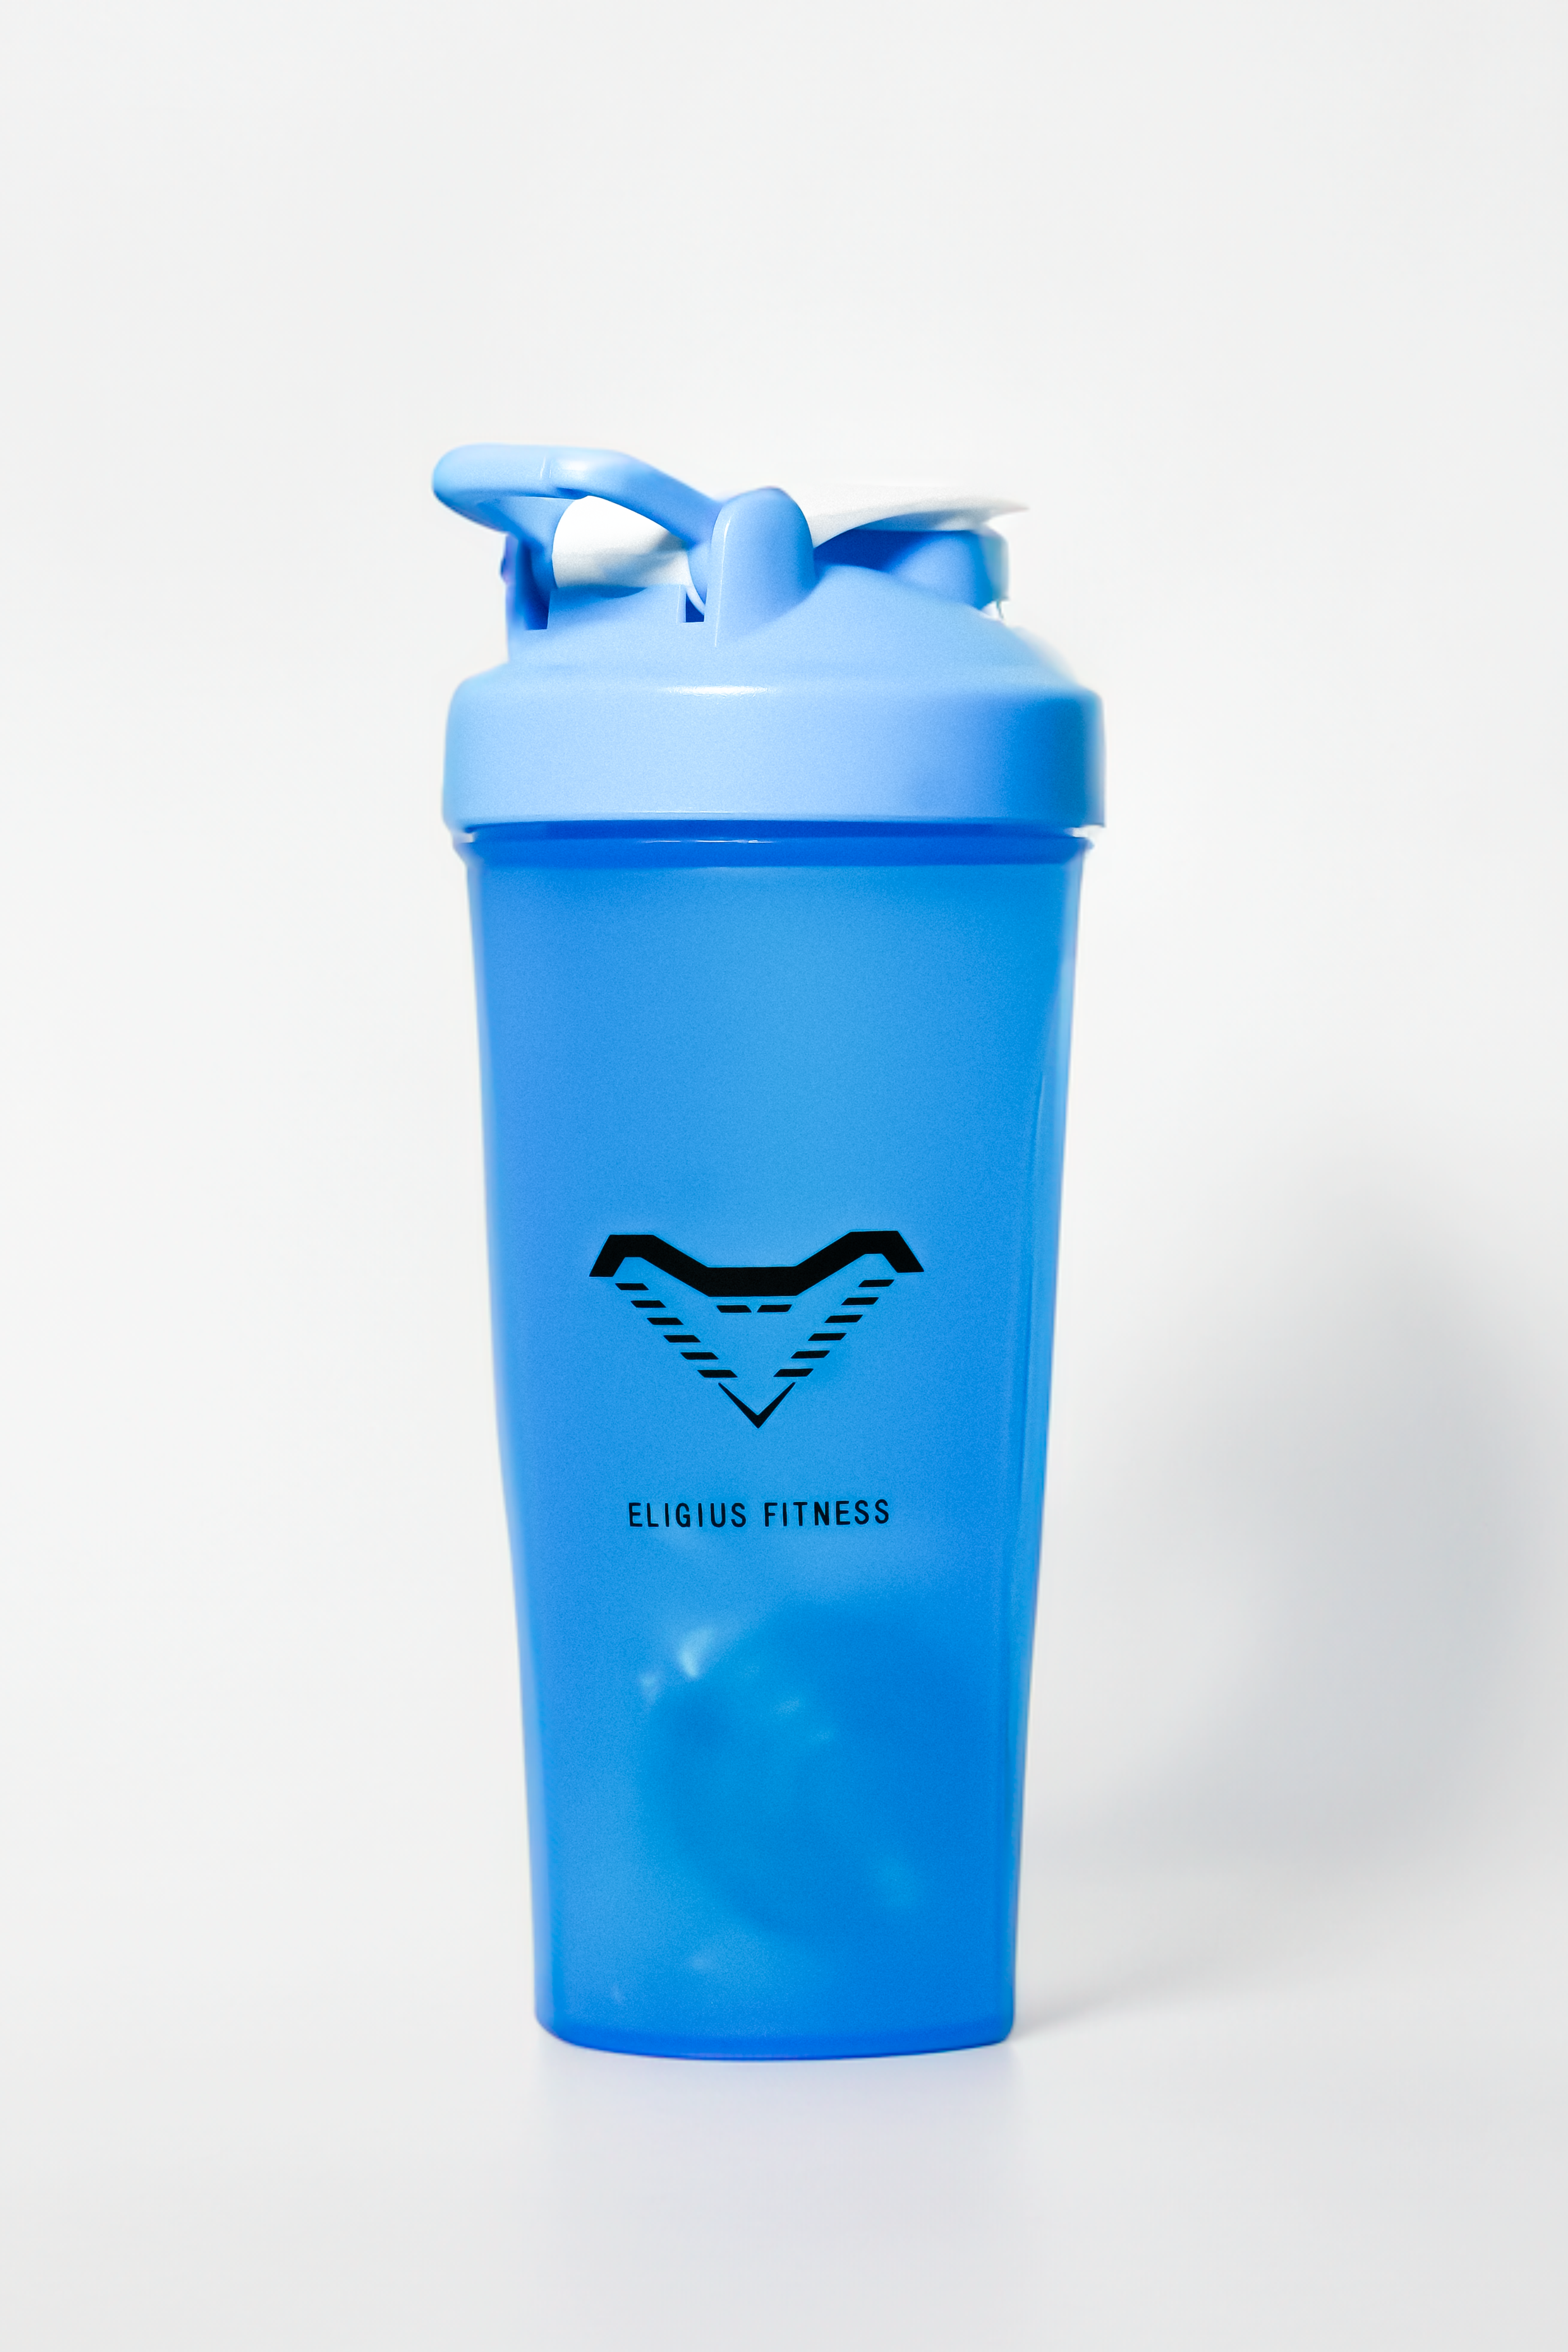 Eligius Fitness Blue Shaker Bottle 